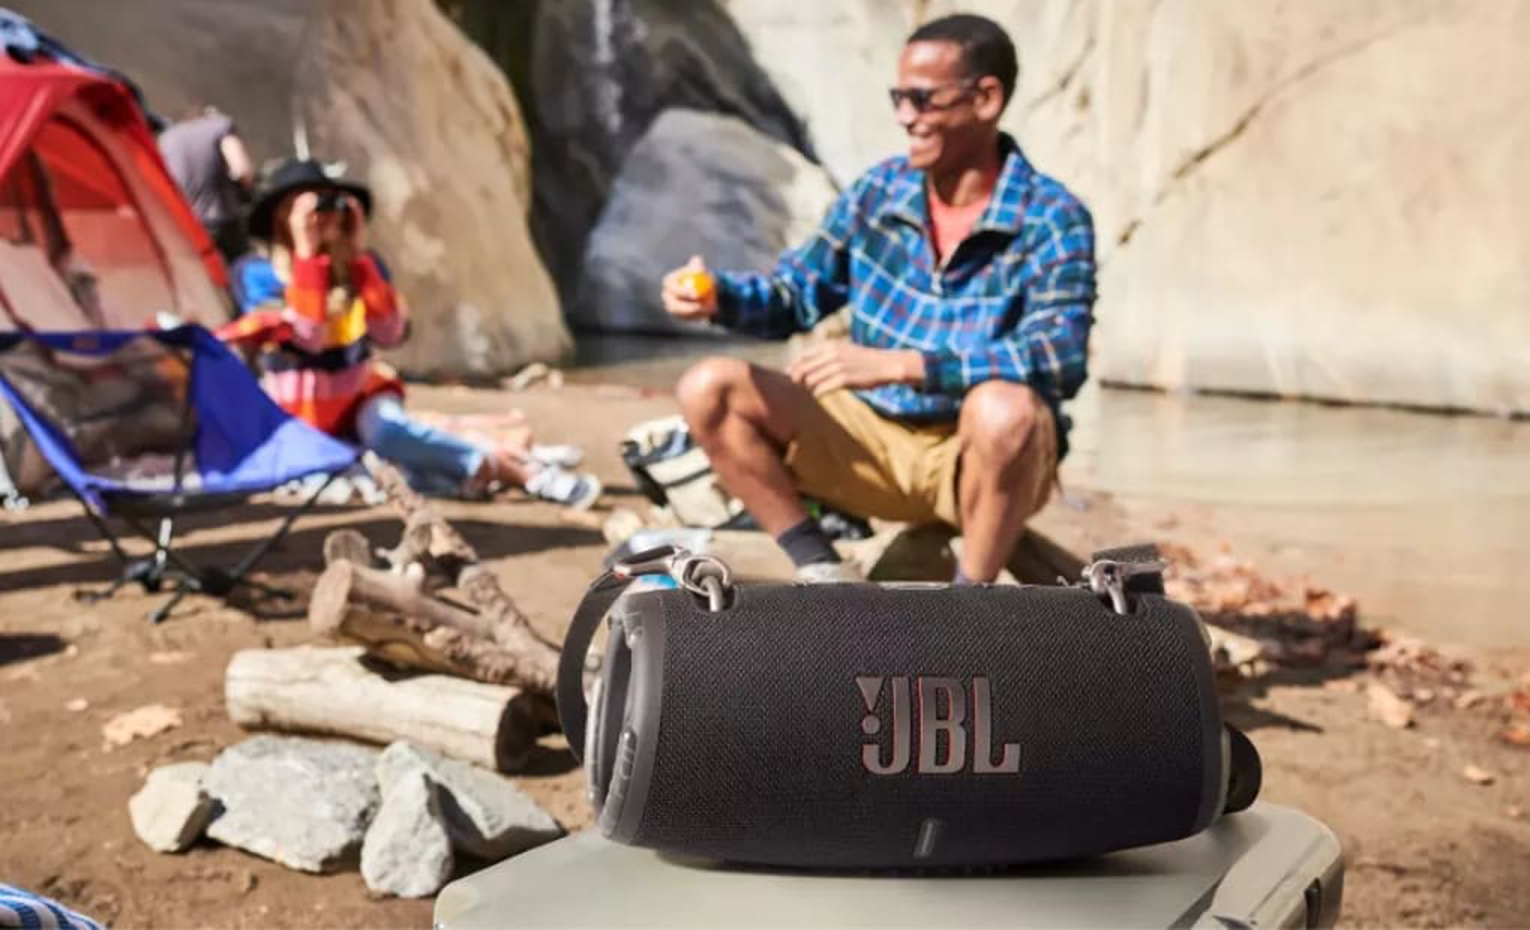 بهترین اسپیکر برای کمپینگ و فضای باز | The best speaker for camping and outdoor